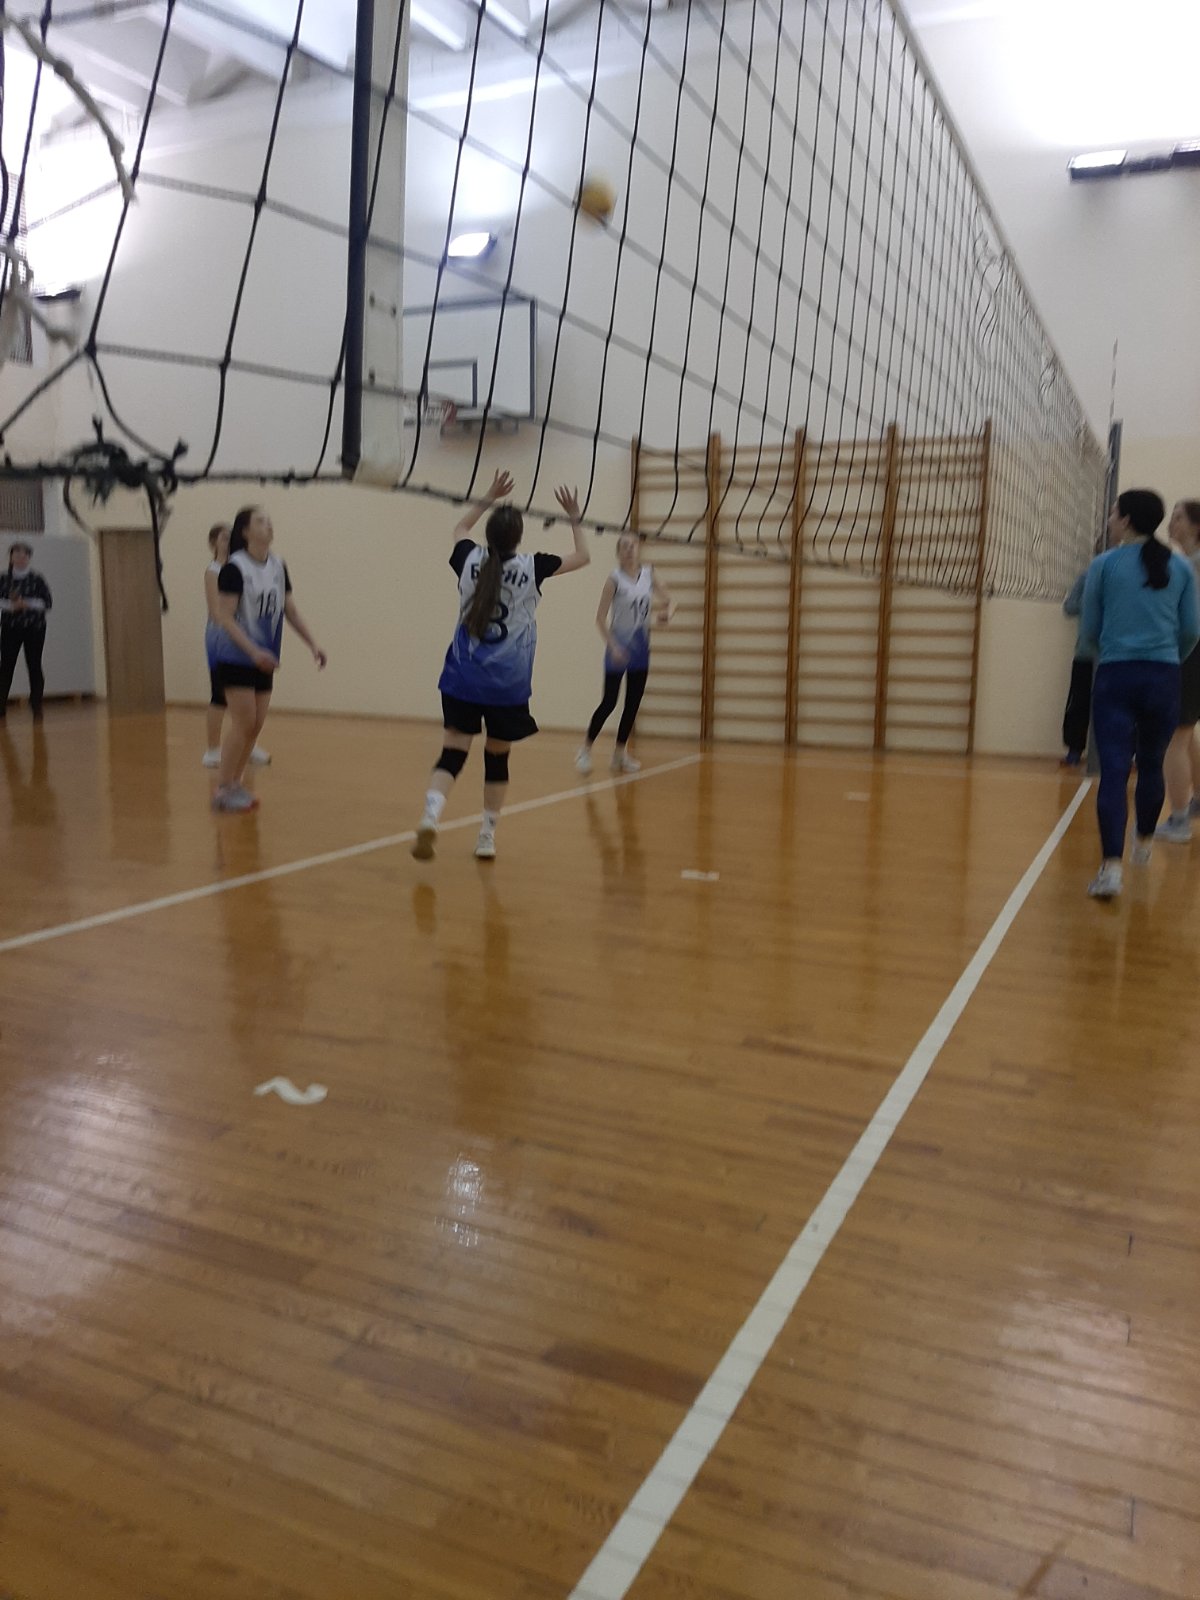 В Московском районе 14,15,19 декабря 2022 года прошли соревнования по волейболу среди женщин в программе районной спартакиады жилого комплекса «Студенческая деревня». 